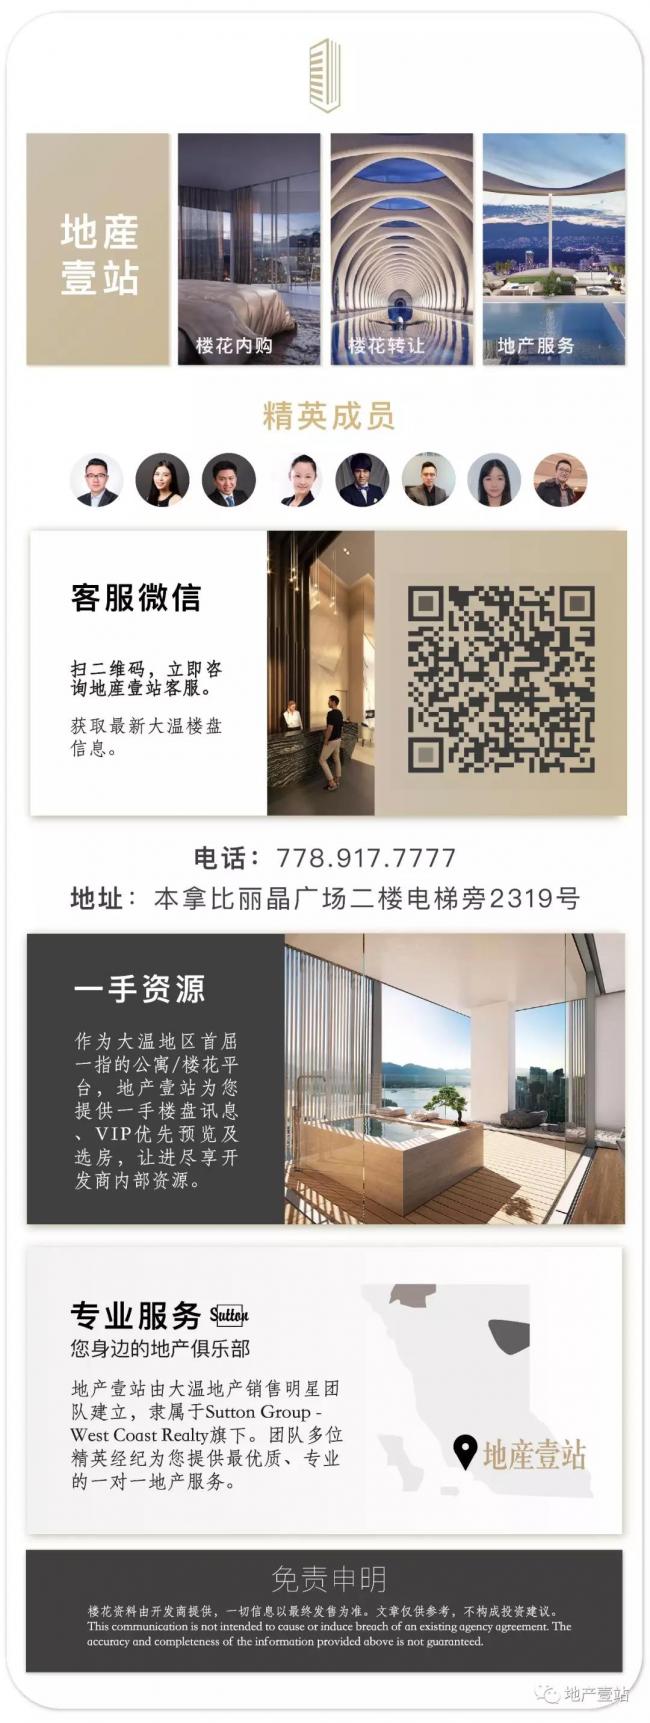 WeChat Image_20180715210800.jpg